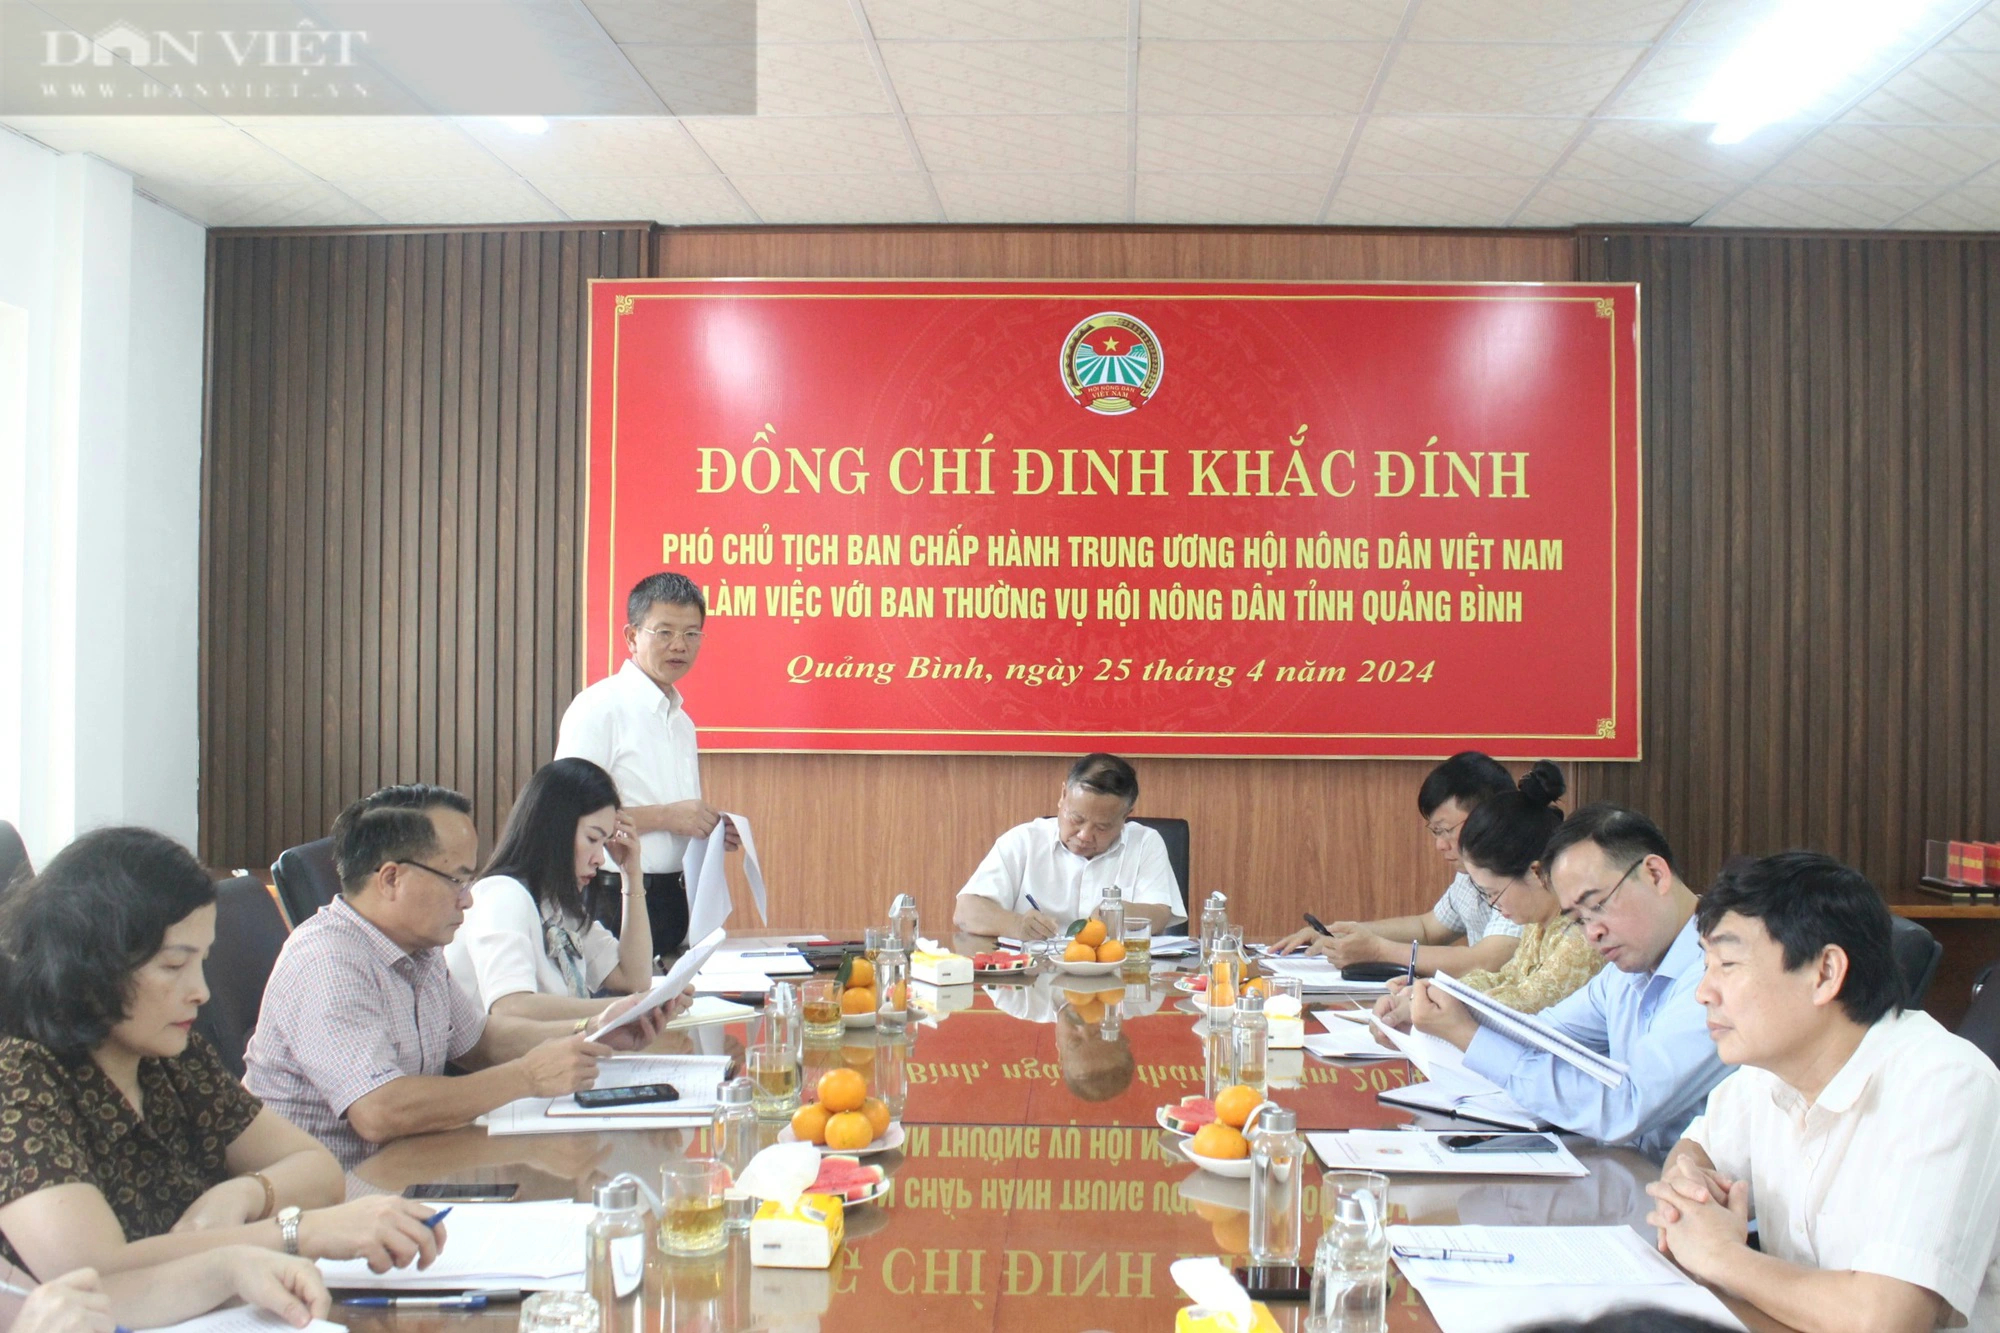 Phó Chủ tịch Hội NDVN Đinh Khắc Đính làm việc với Hội Nông dân Quảng Bình- Ảnh 2.